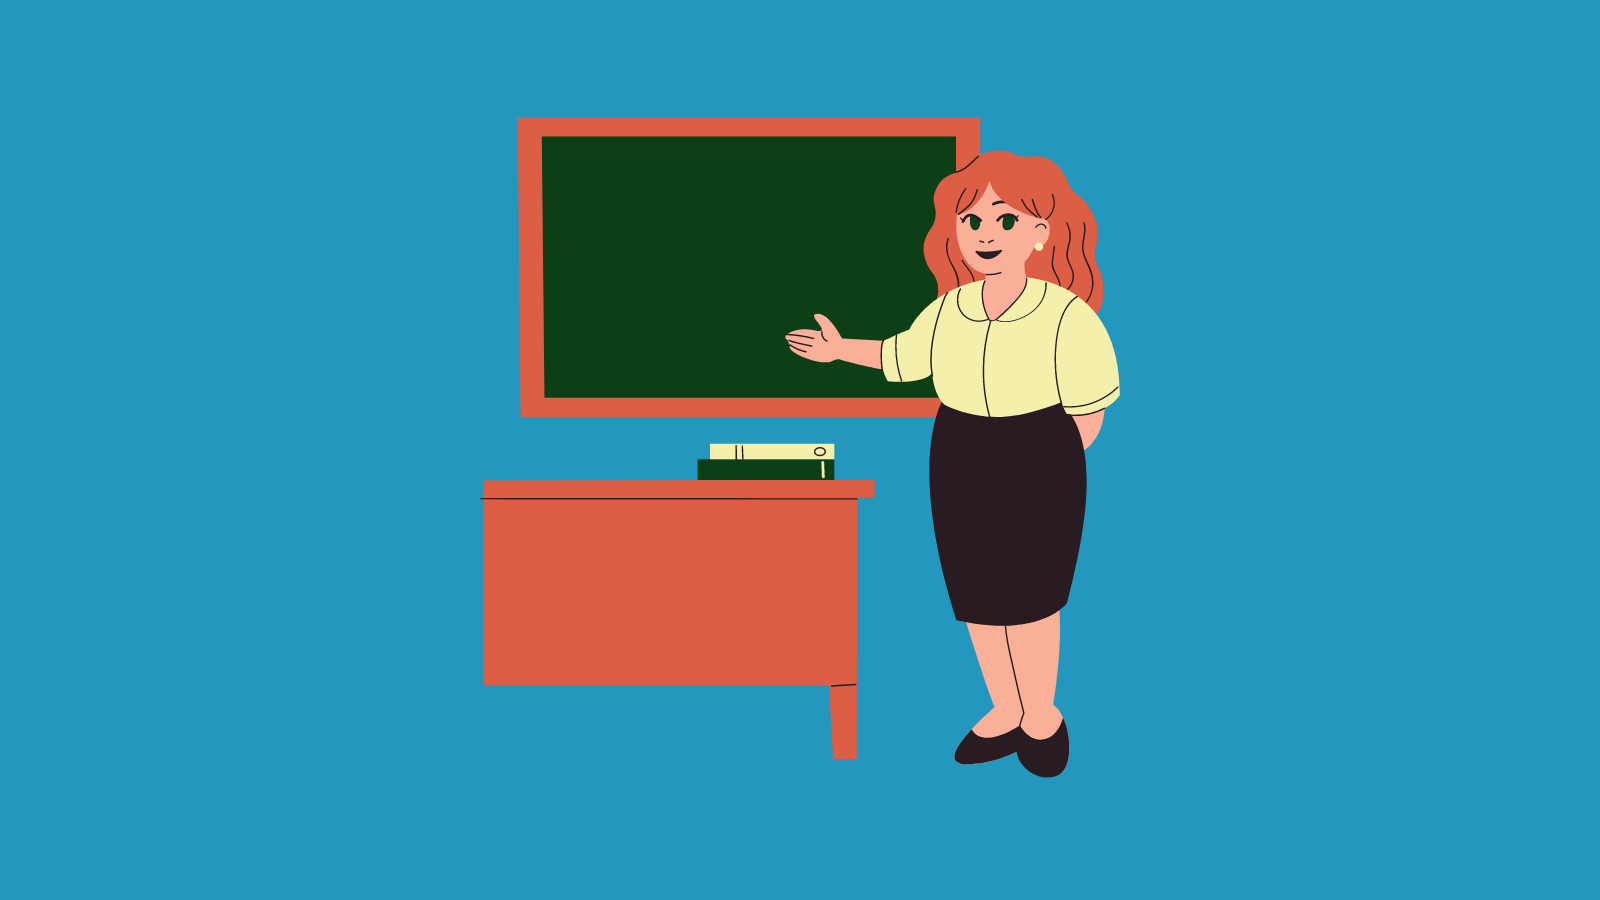 A teacher gesturing at a chalkboard